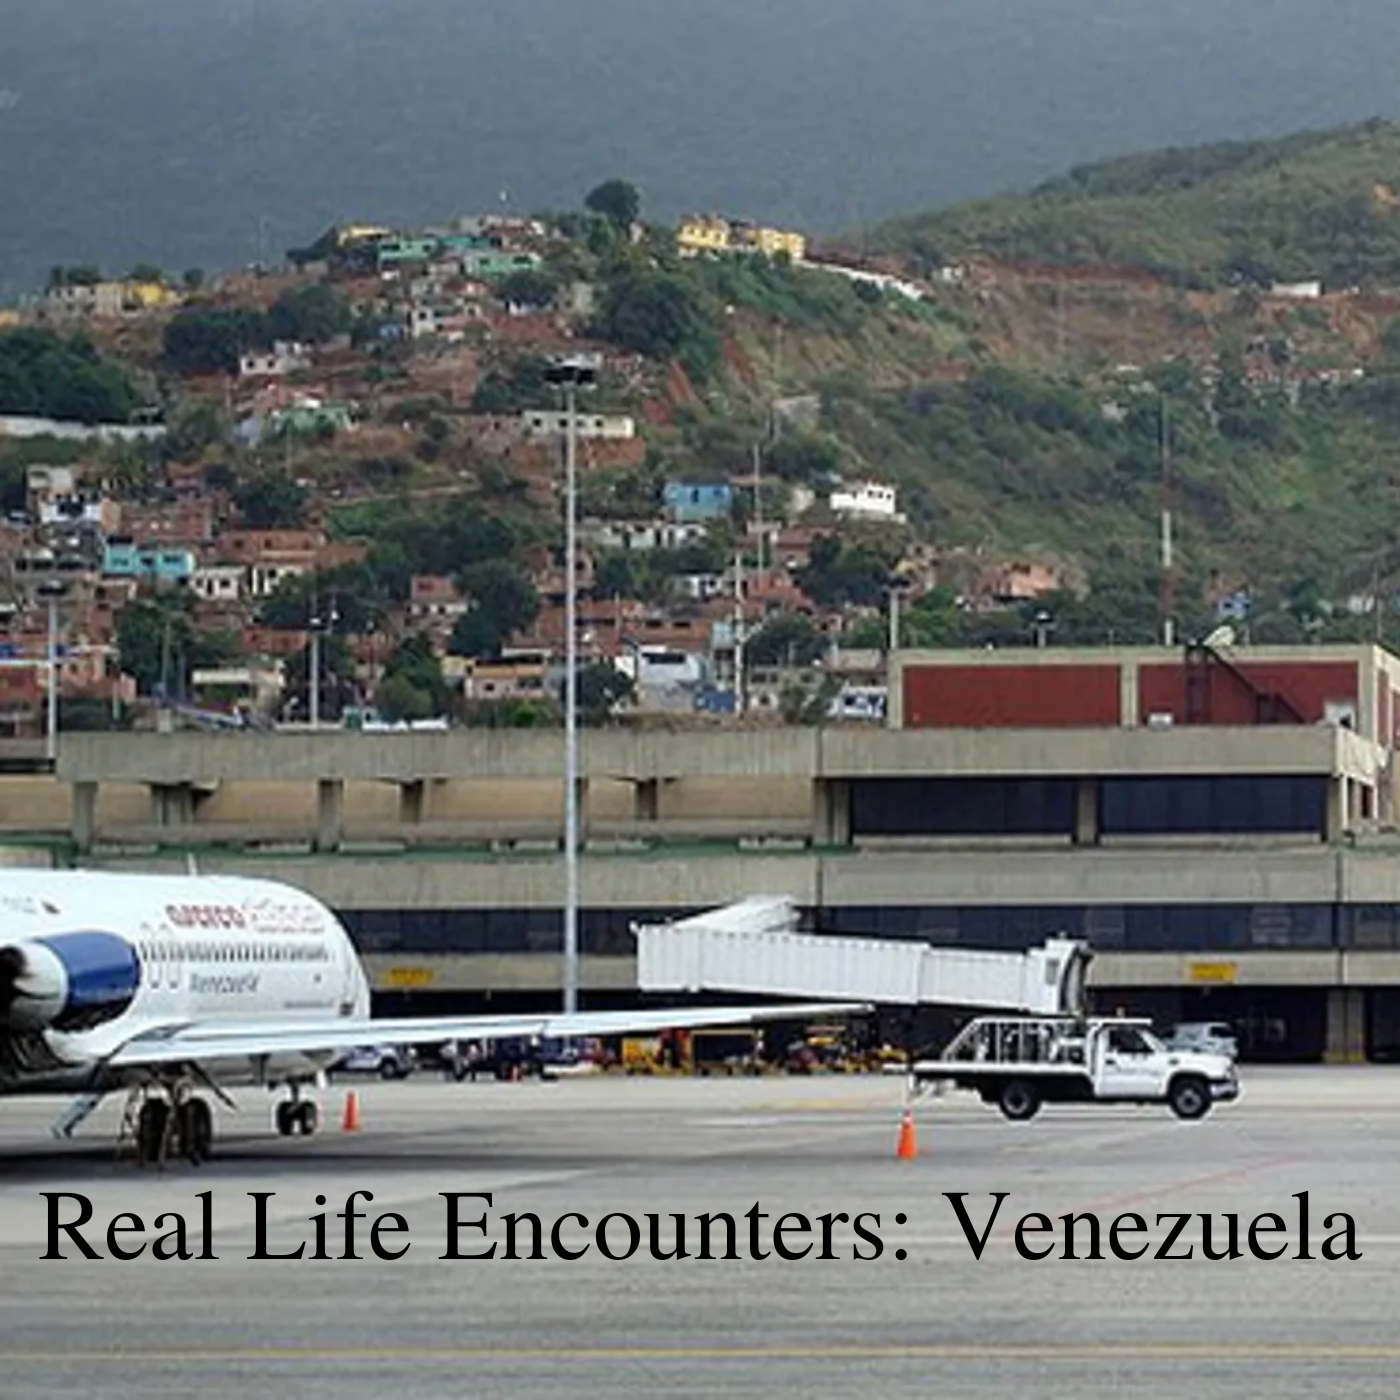 * Real Life Encounters: Venezuela